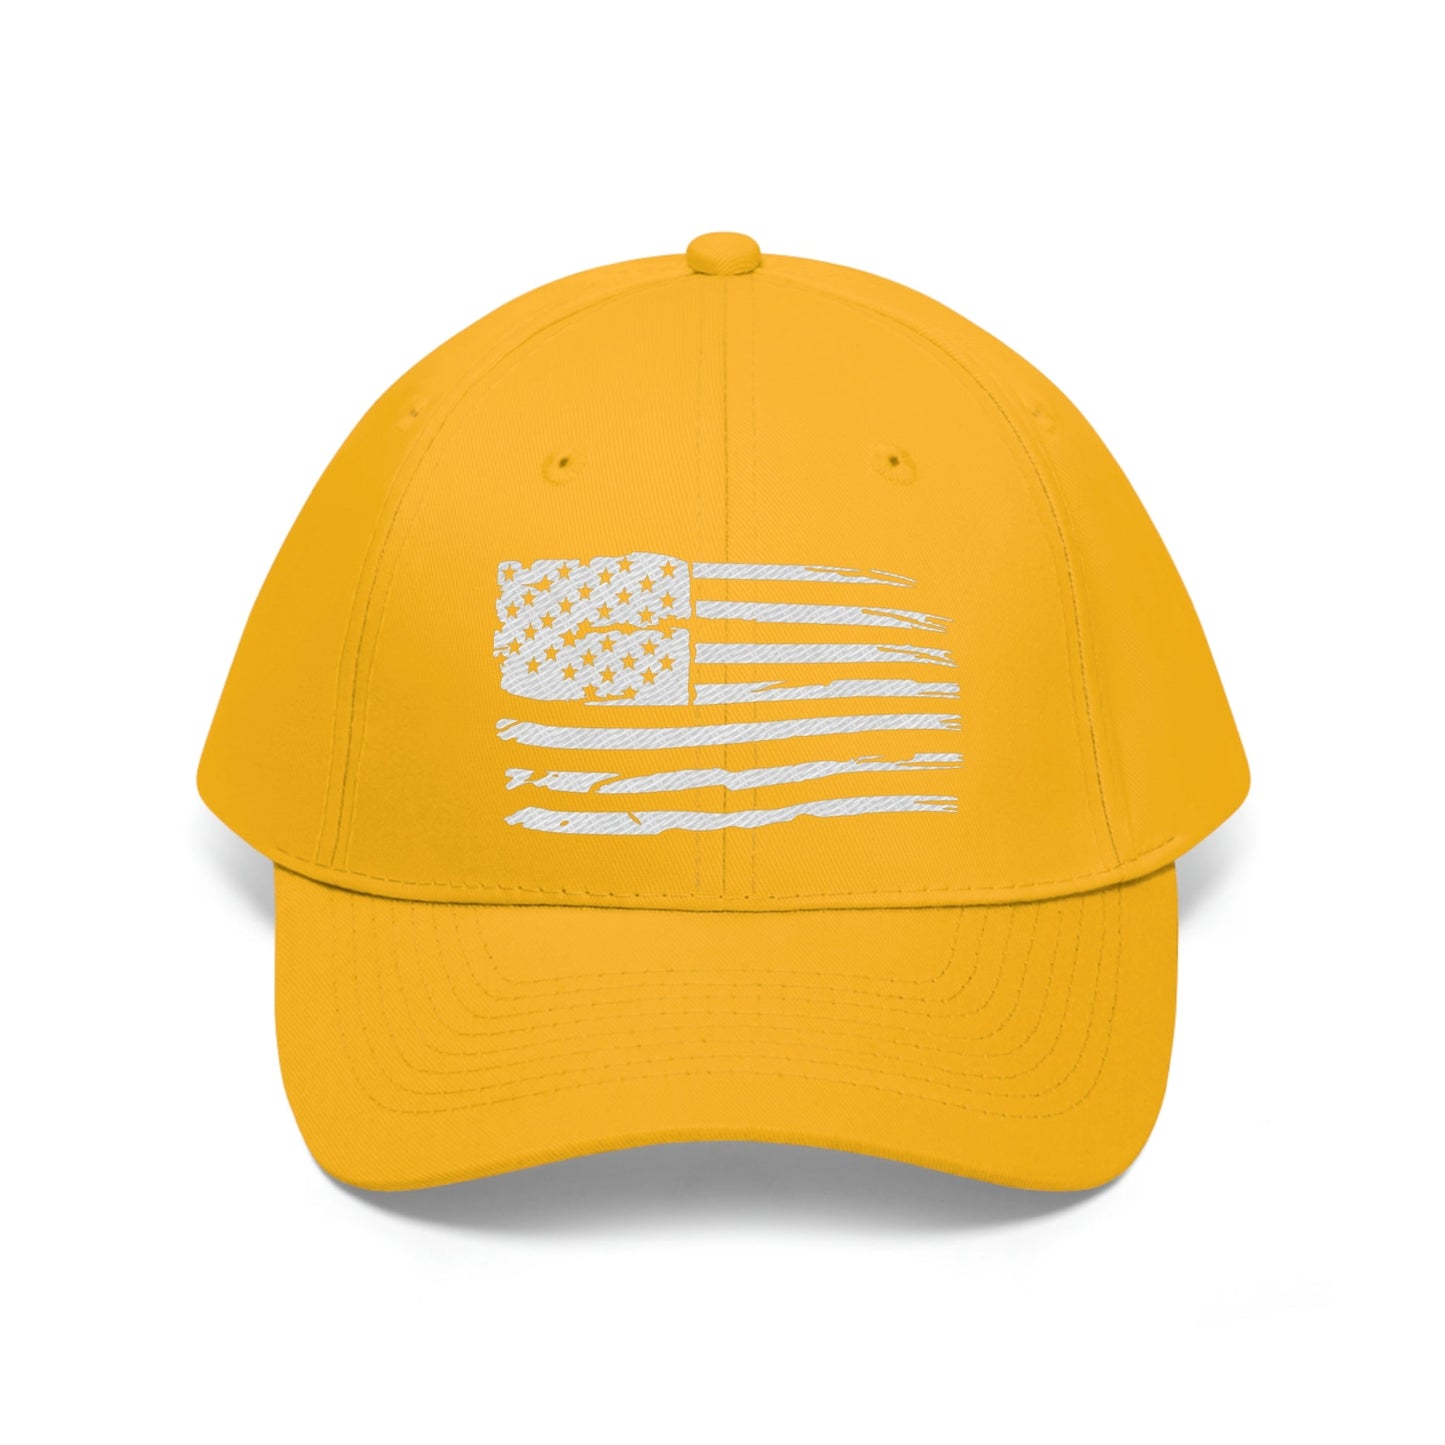 American Flag Twill Hat